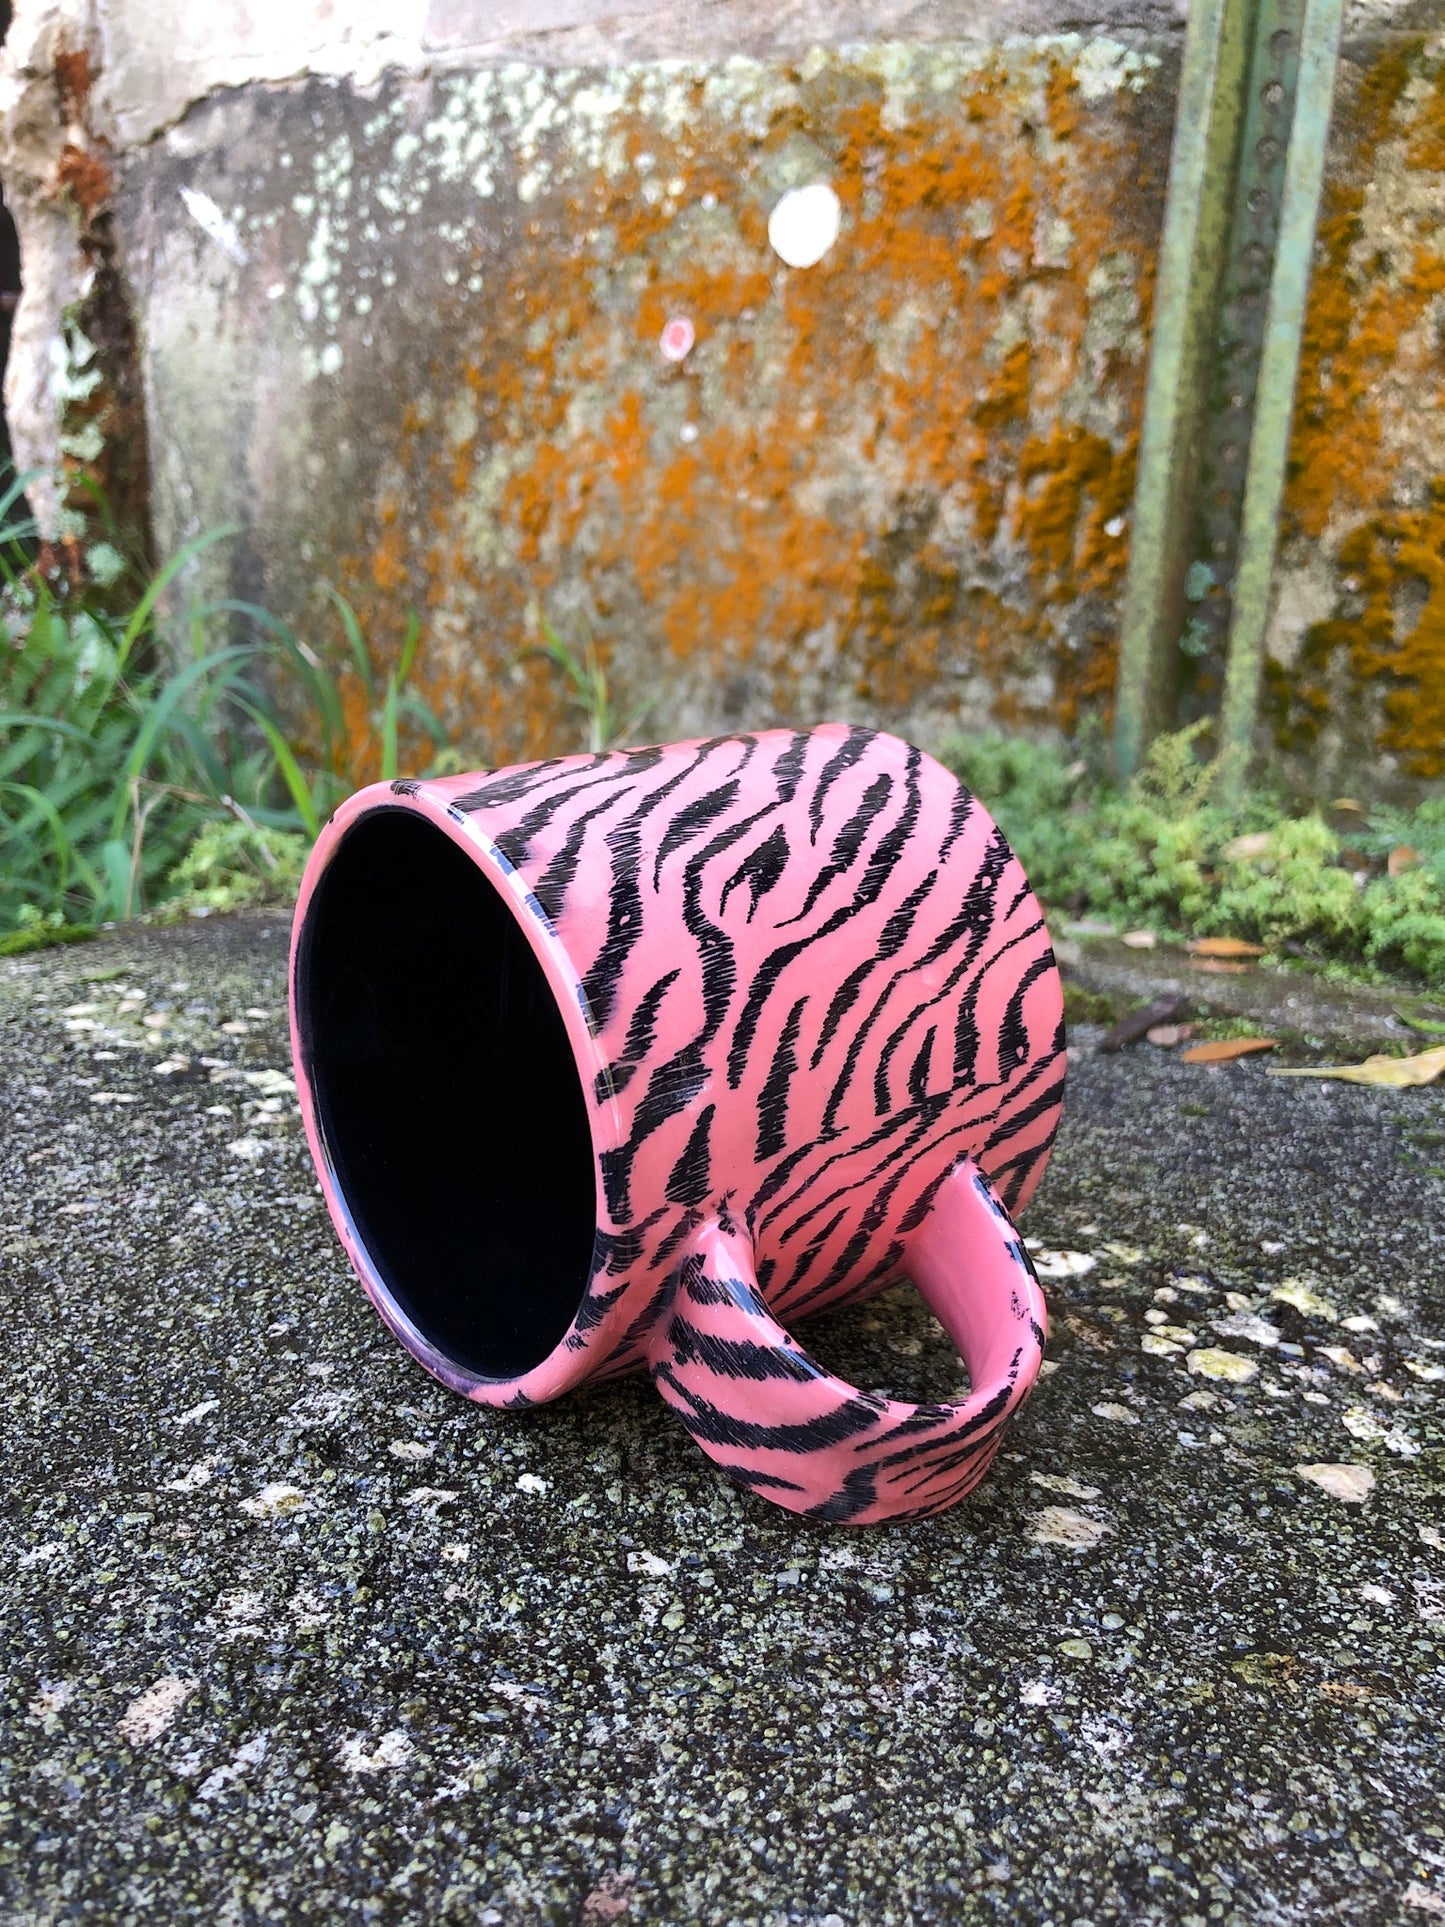 Pink Tiger Stripe Mug